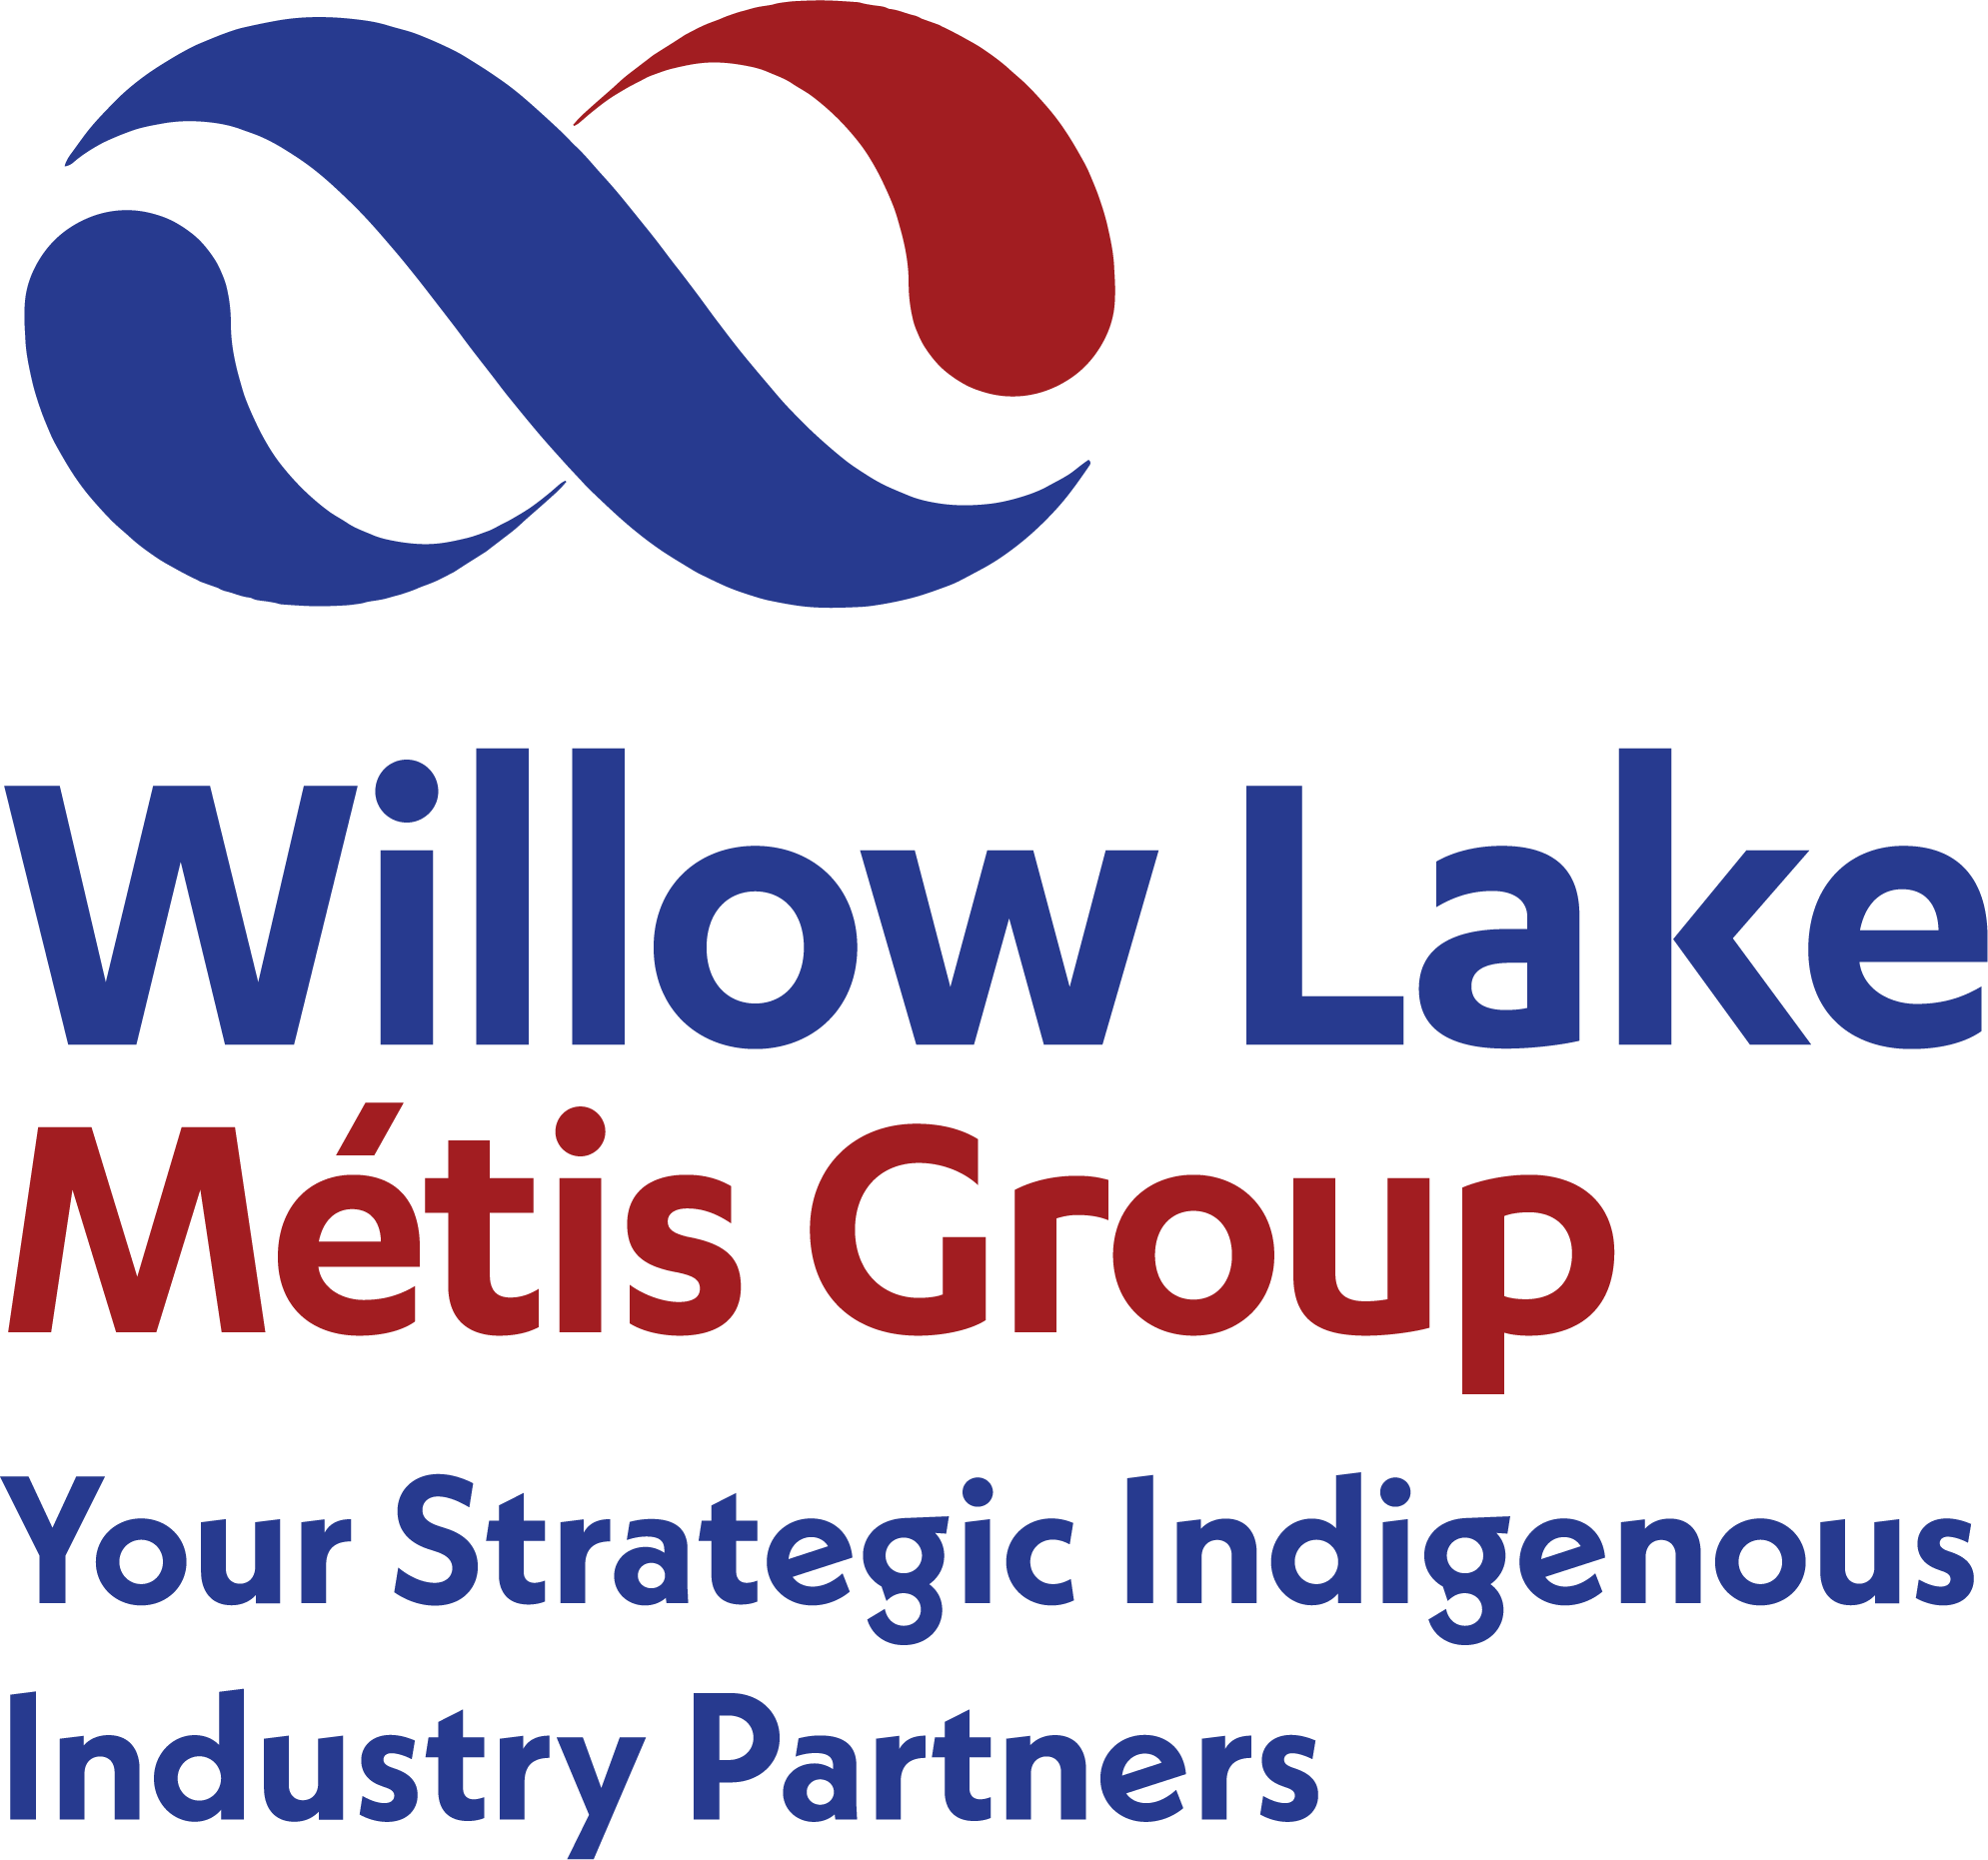 Willow Lake Metis Group